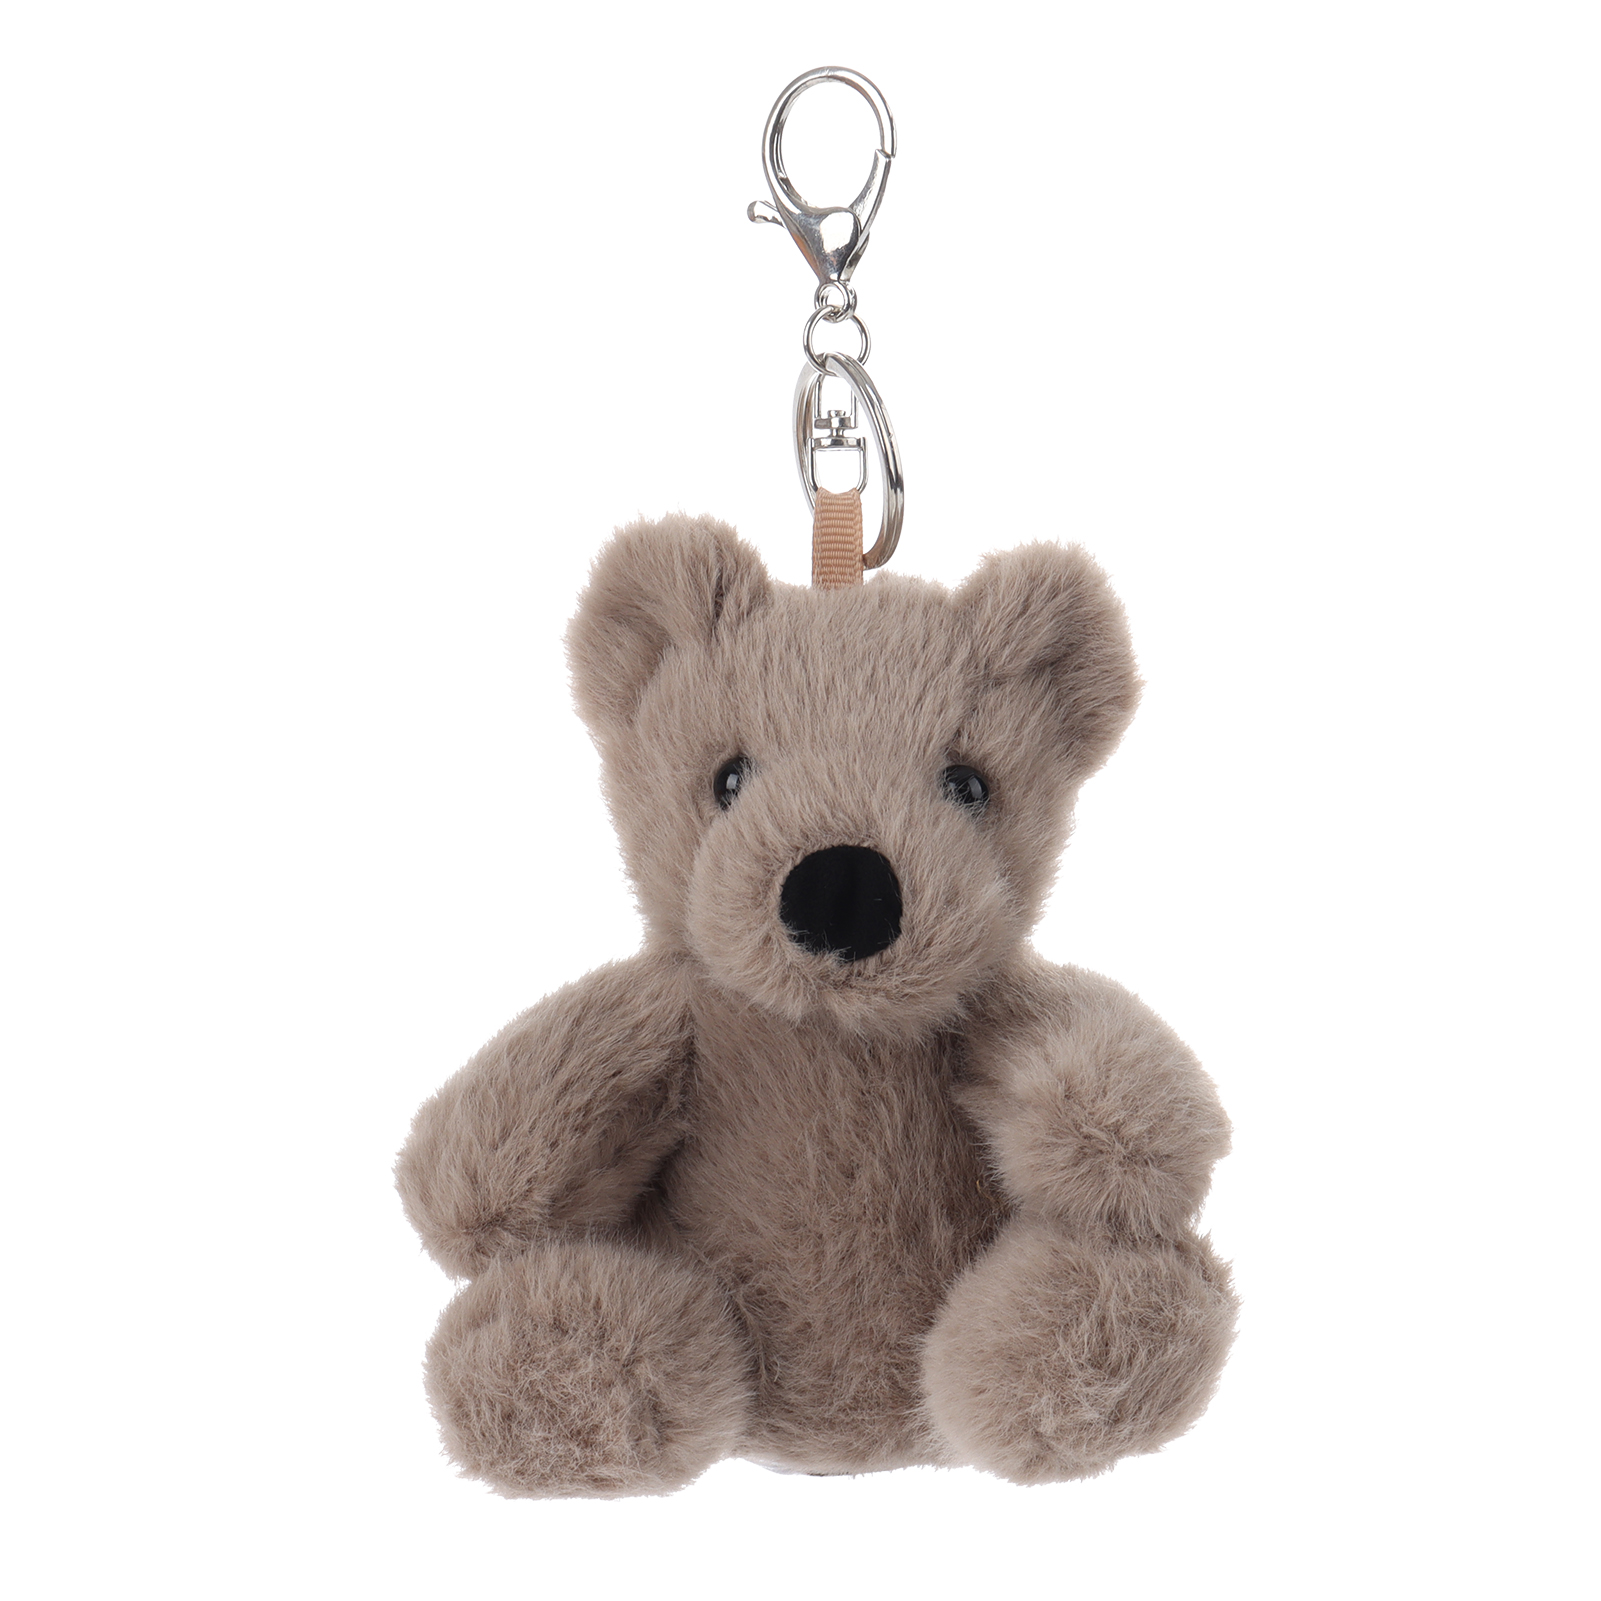 Apricot Lamb Key- Small Bear Stuffed Animal Plush Keychain